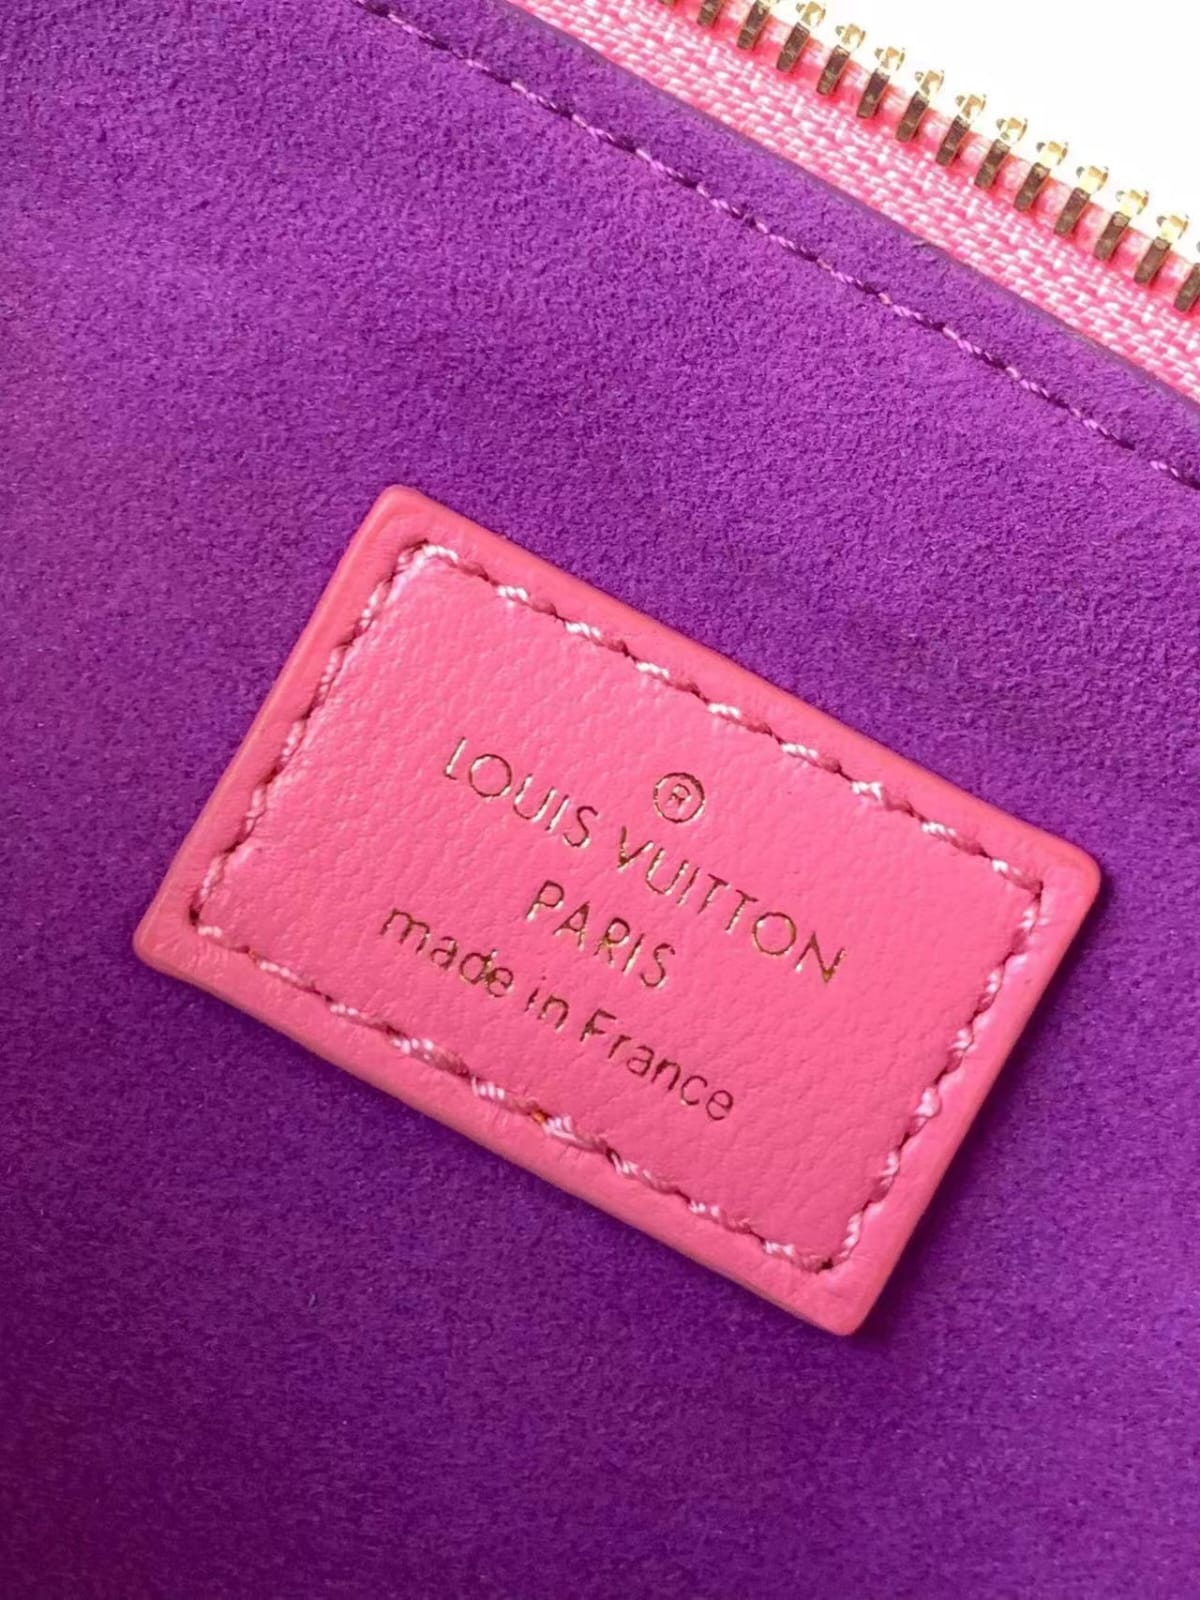 Louis Vuitton Coussin leather Handbag  lushentic version